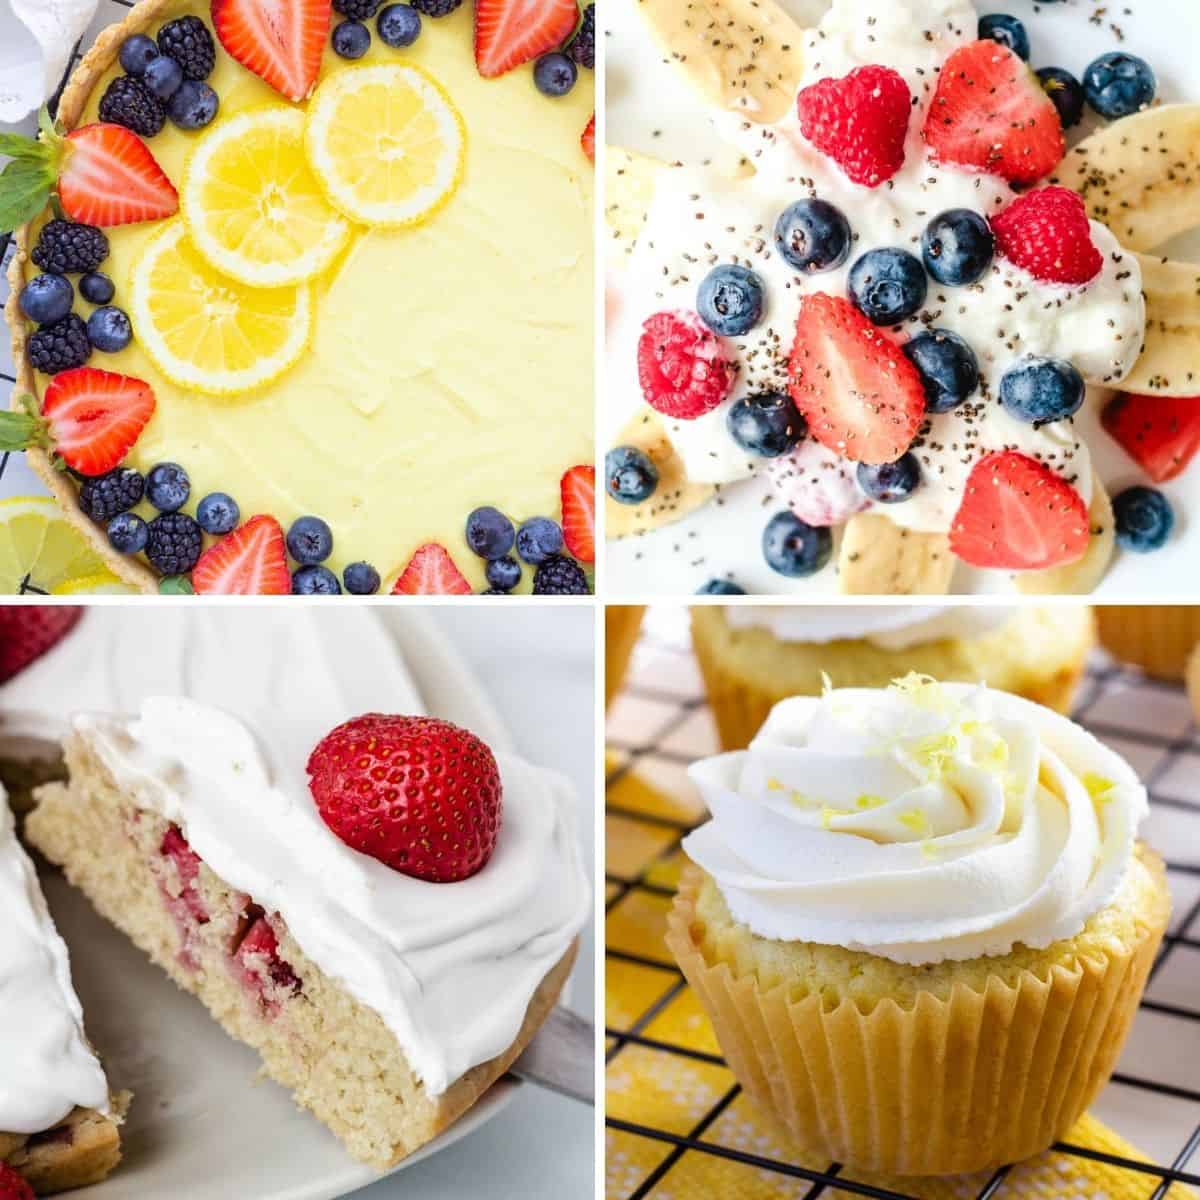 Easy vegan desserts, lemon tart, banana split, strawberry cake, cupcake.